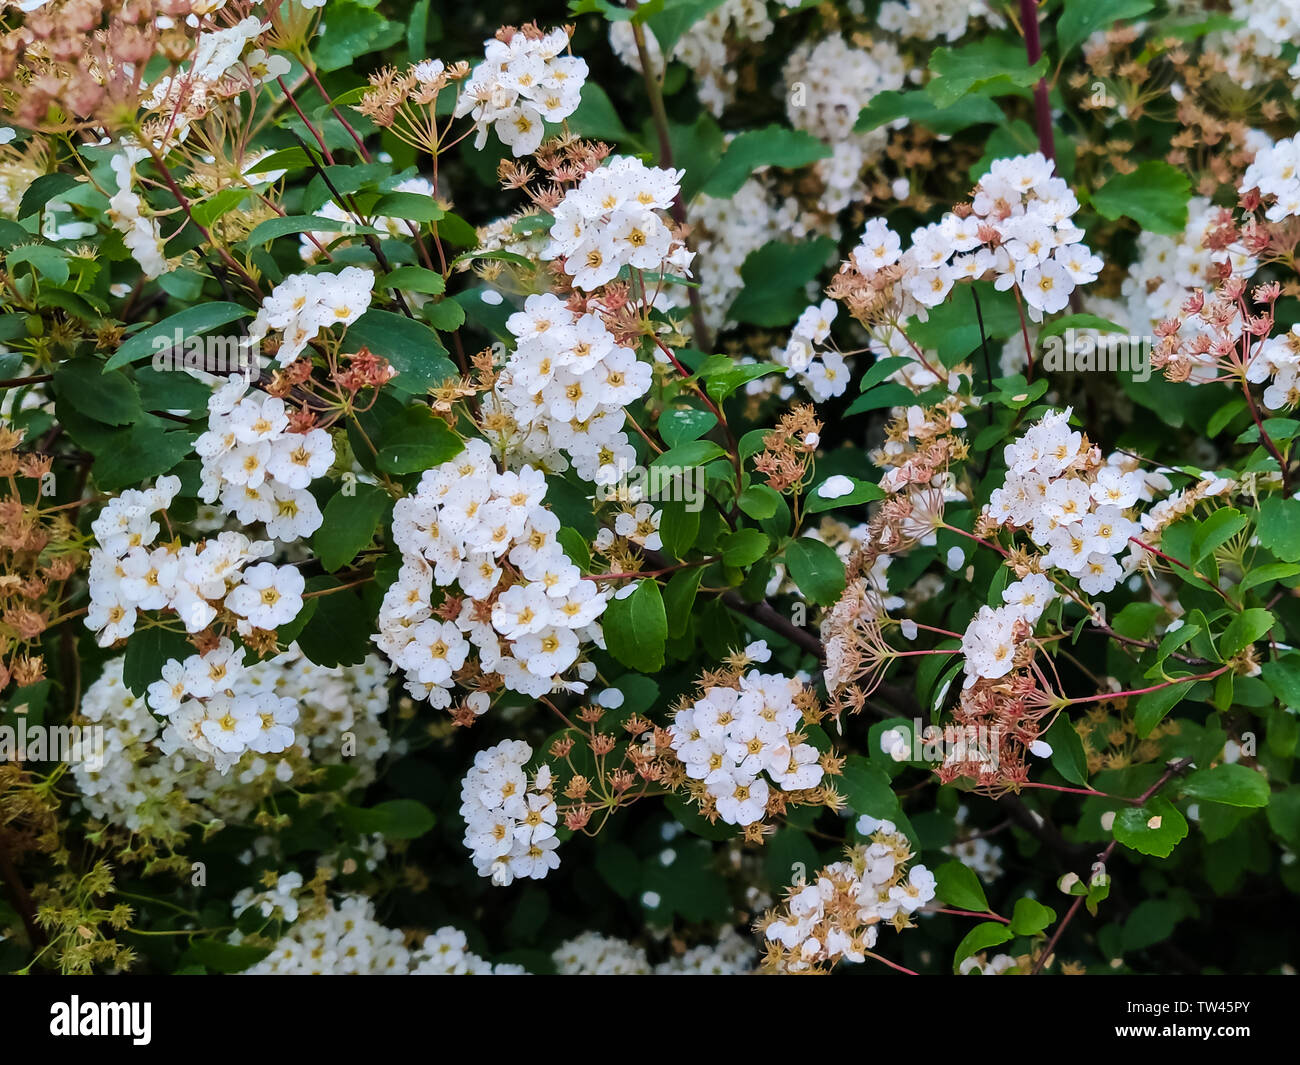 Bushes white flowers of spiraea or meadowsweet Stock Photo